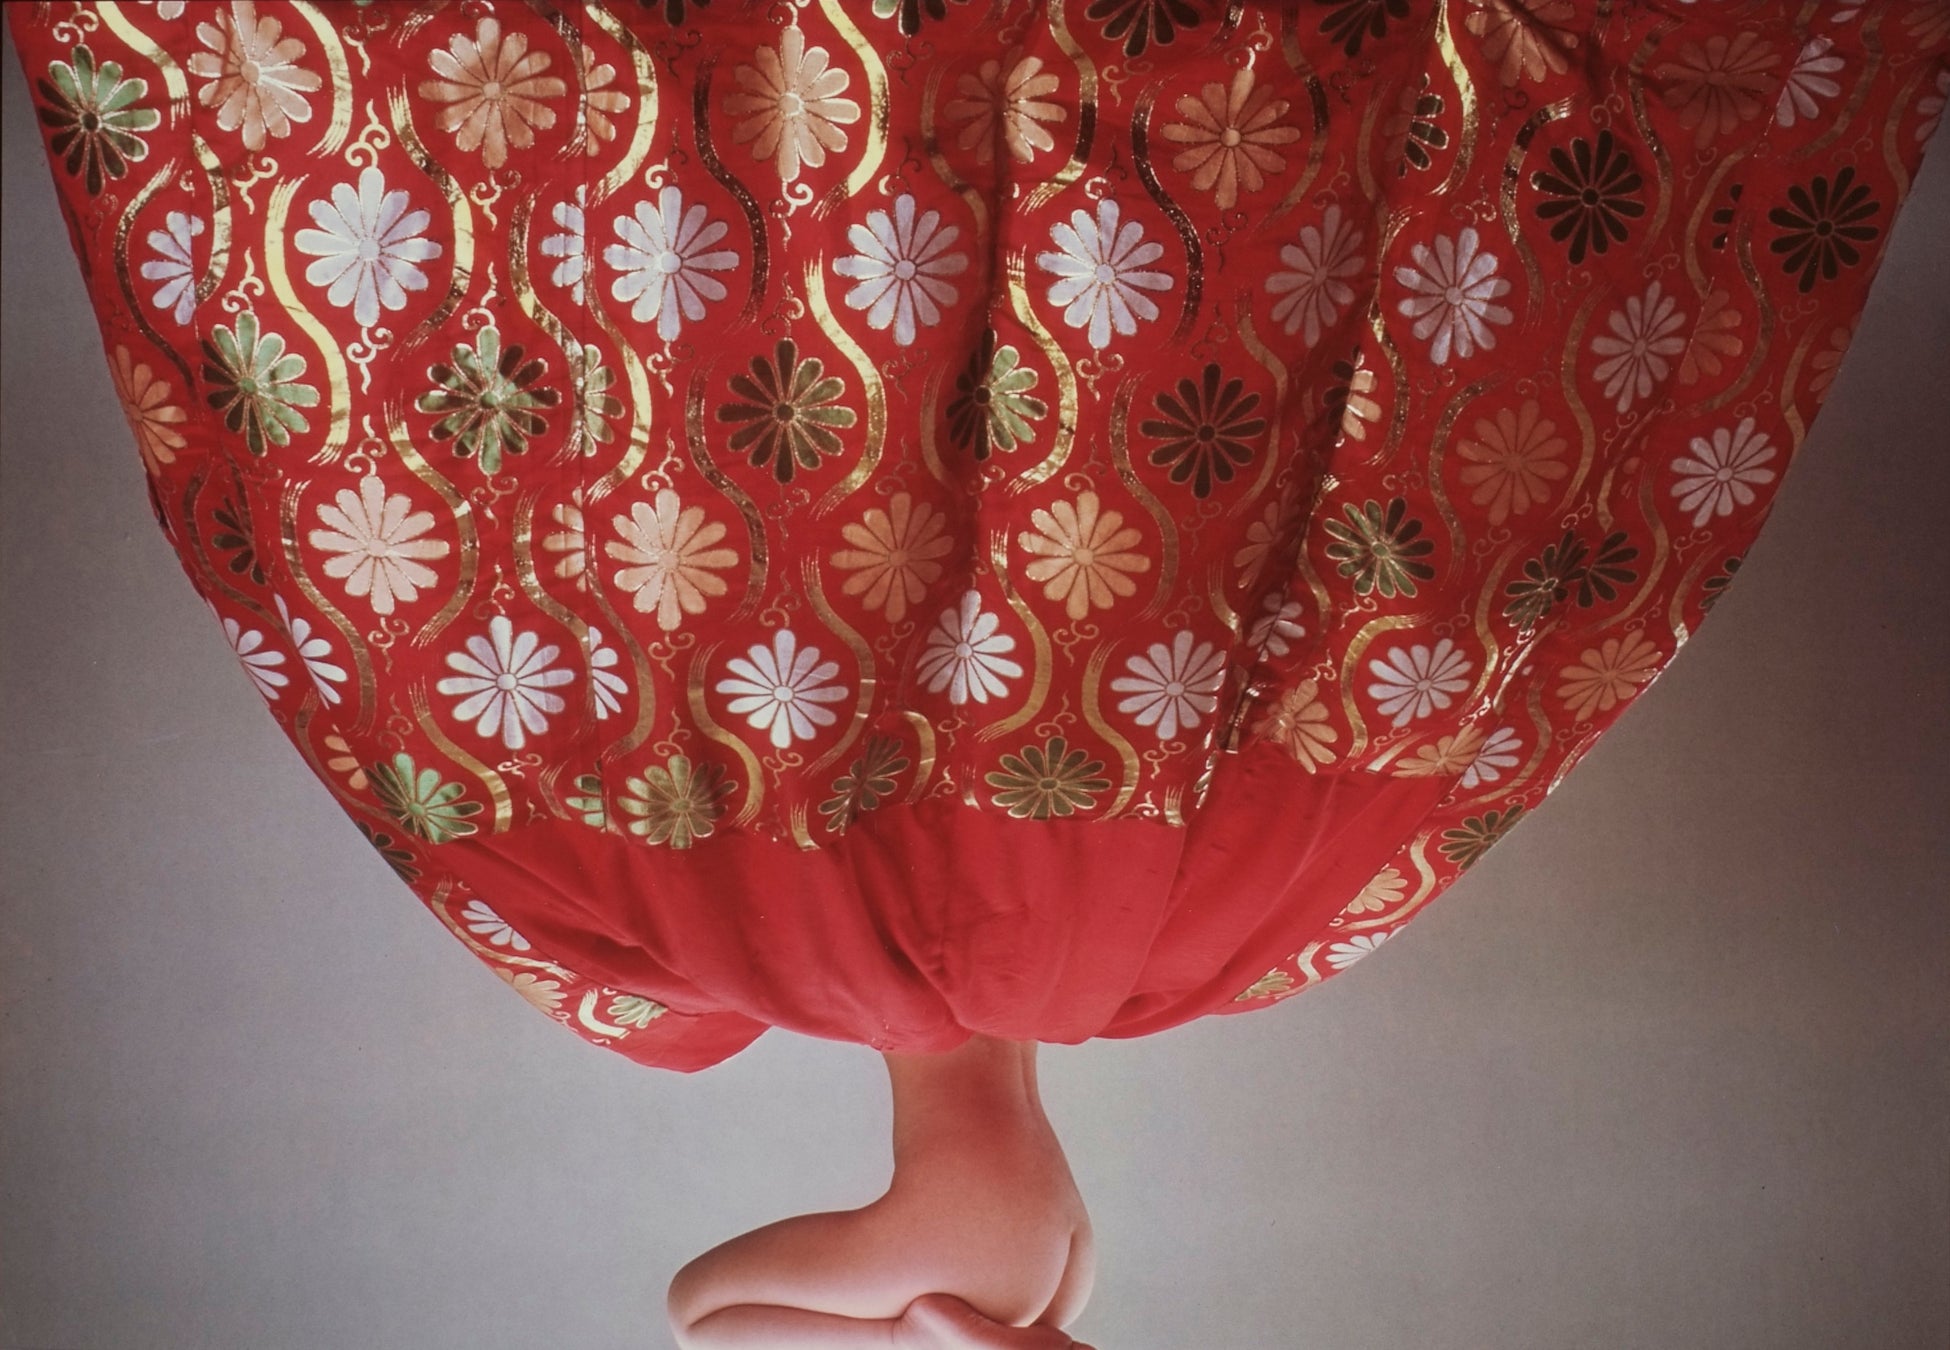 奈良原一高《色〈ジャパネスク〉より》1968年  島根県立美術館蔵　©Ikko Narahara Archives